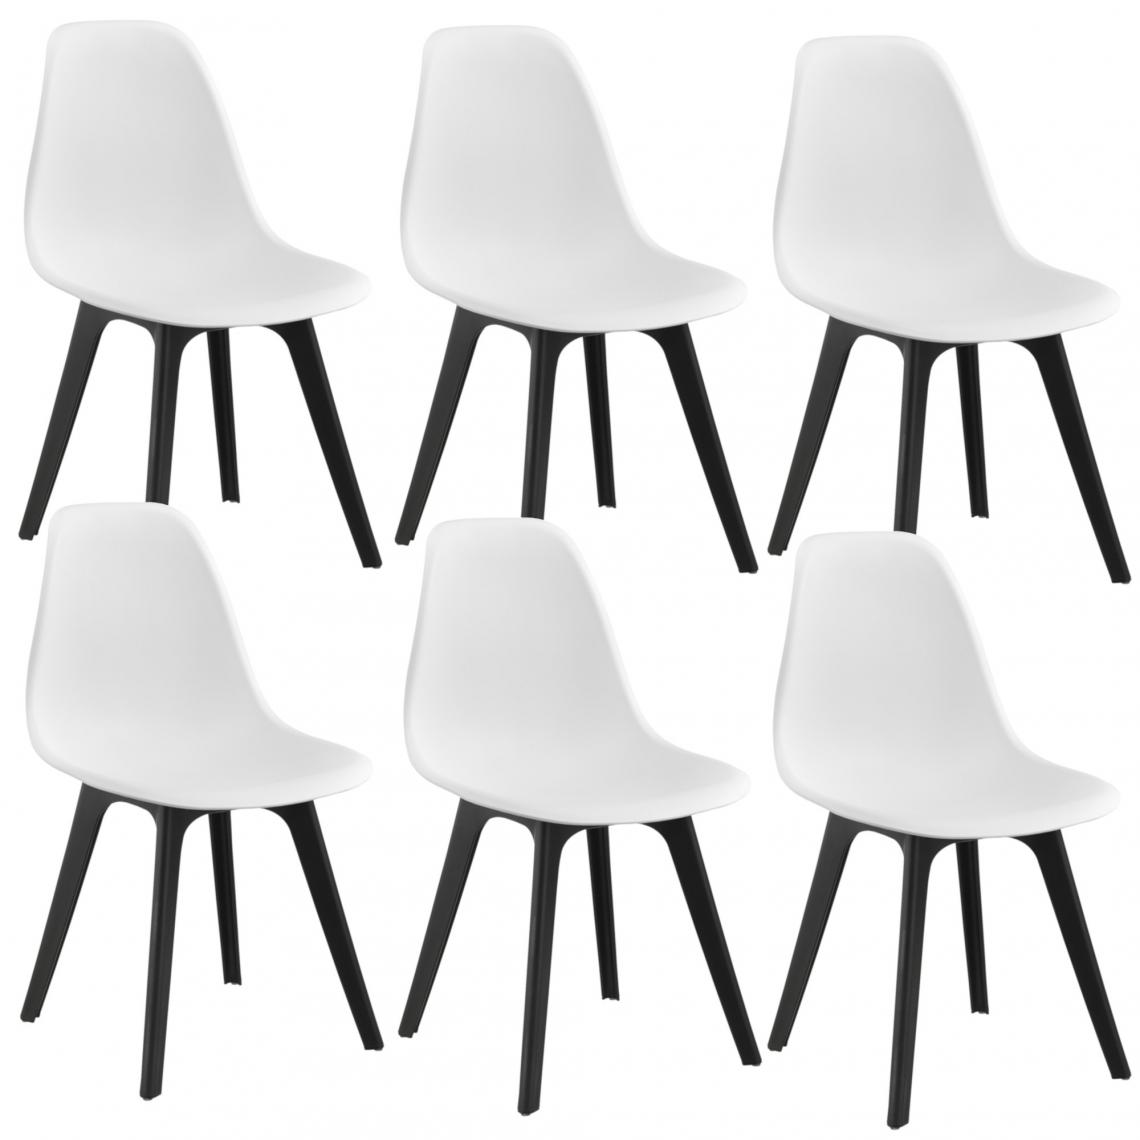 Decoshop26 - Set de 6 Chaises Design Chaise de Cuisine Salle à Manger Plastique Blanc et Noir 03_0003728 - Chaises